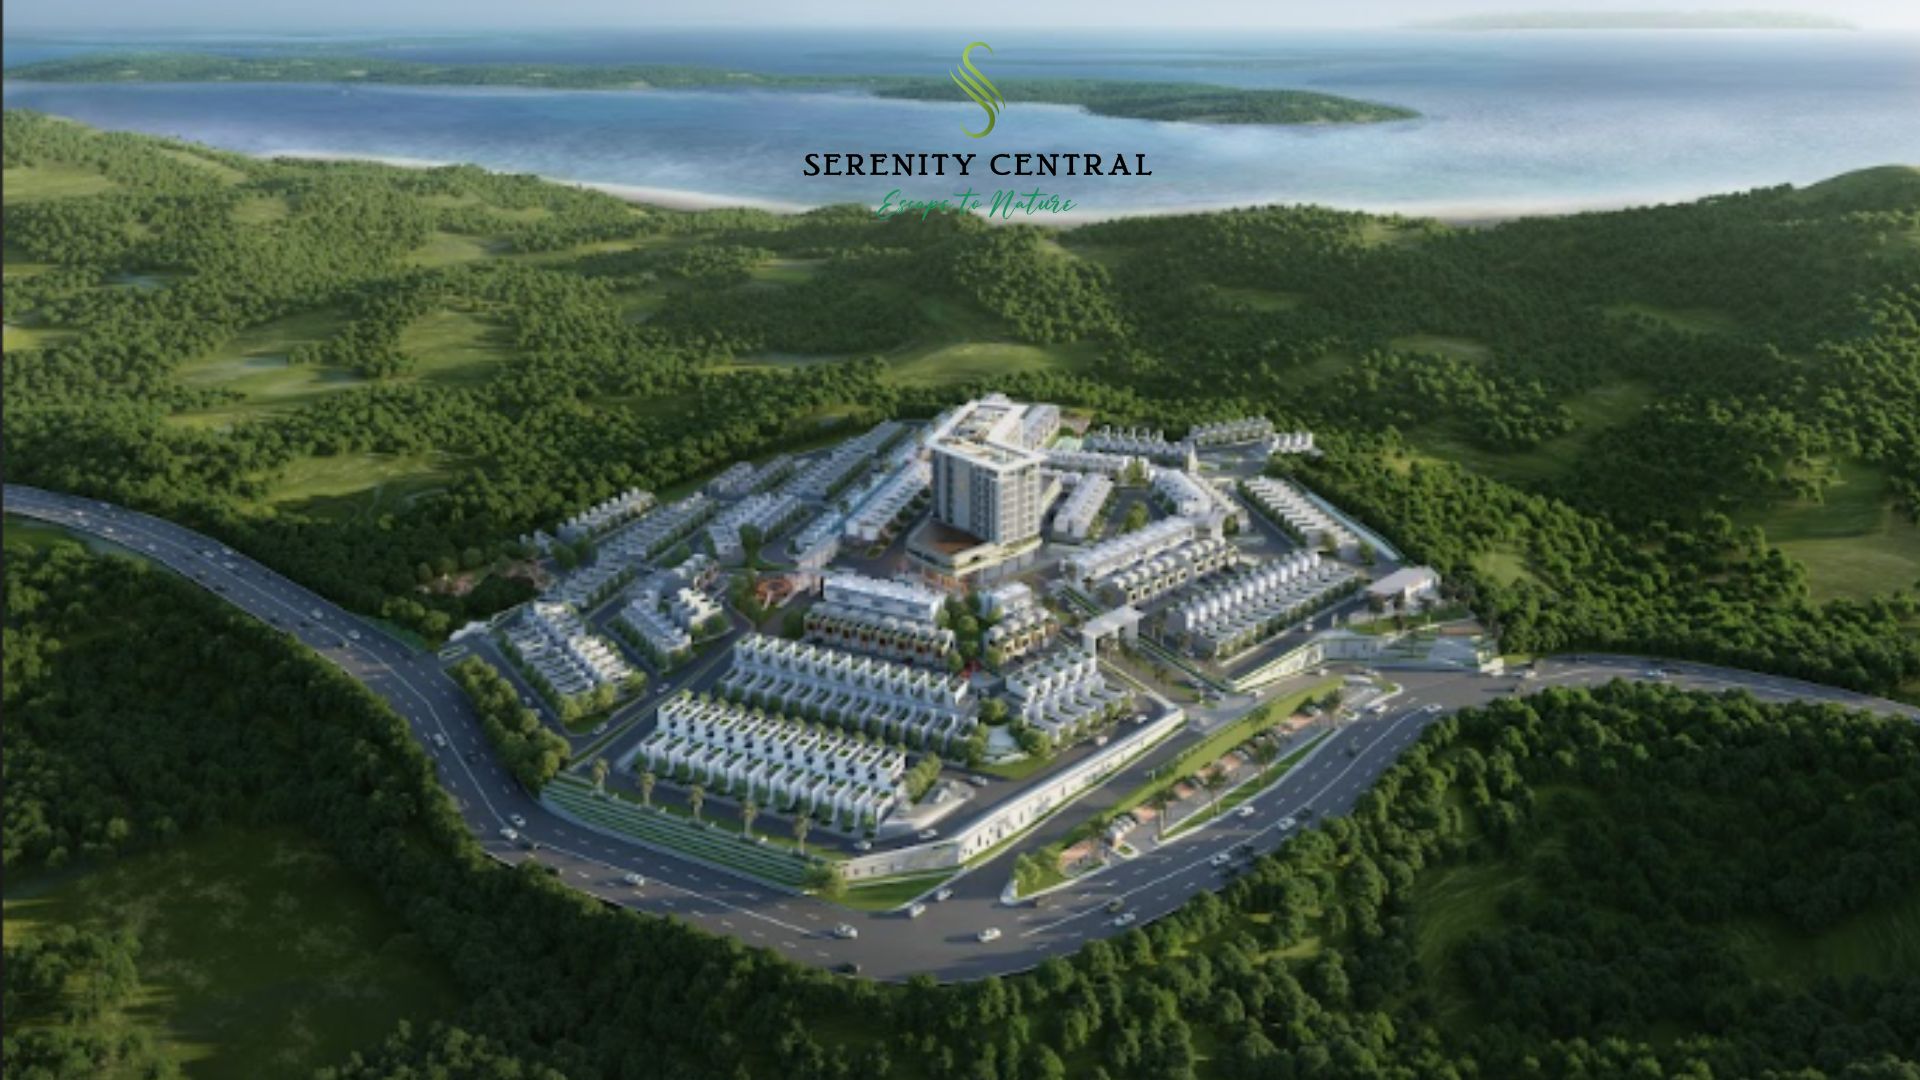 Serenity Central City Menjadi Salah Satu Proyek Central Group di Indonesia yang Banyak dilirik Investor